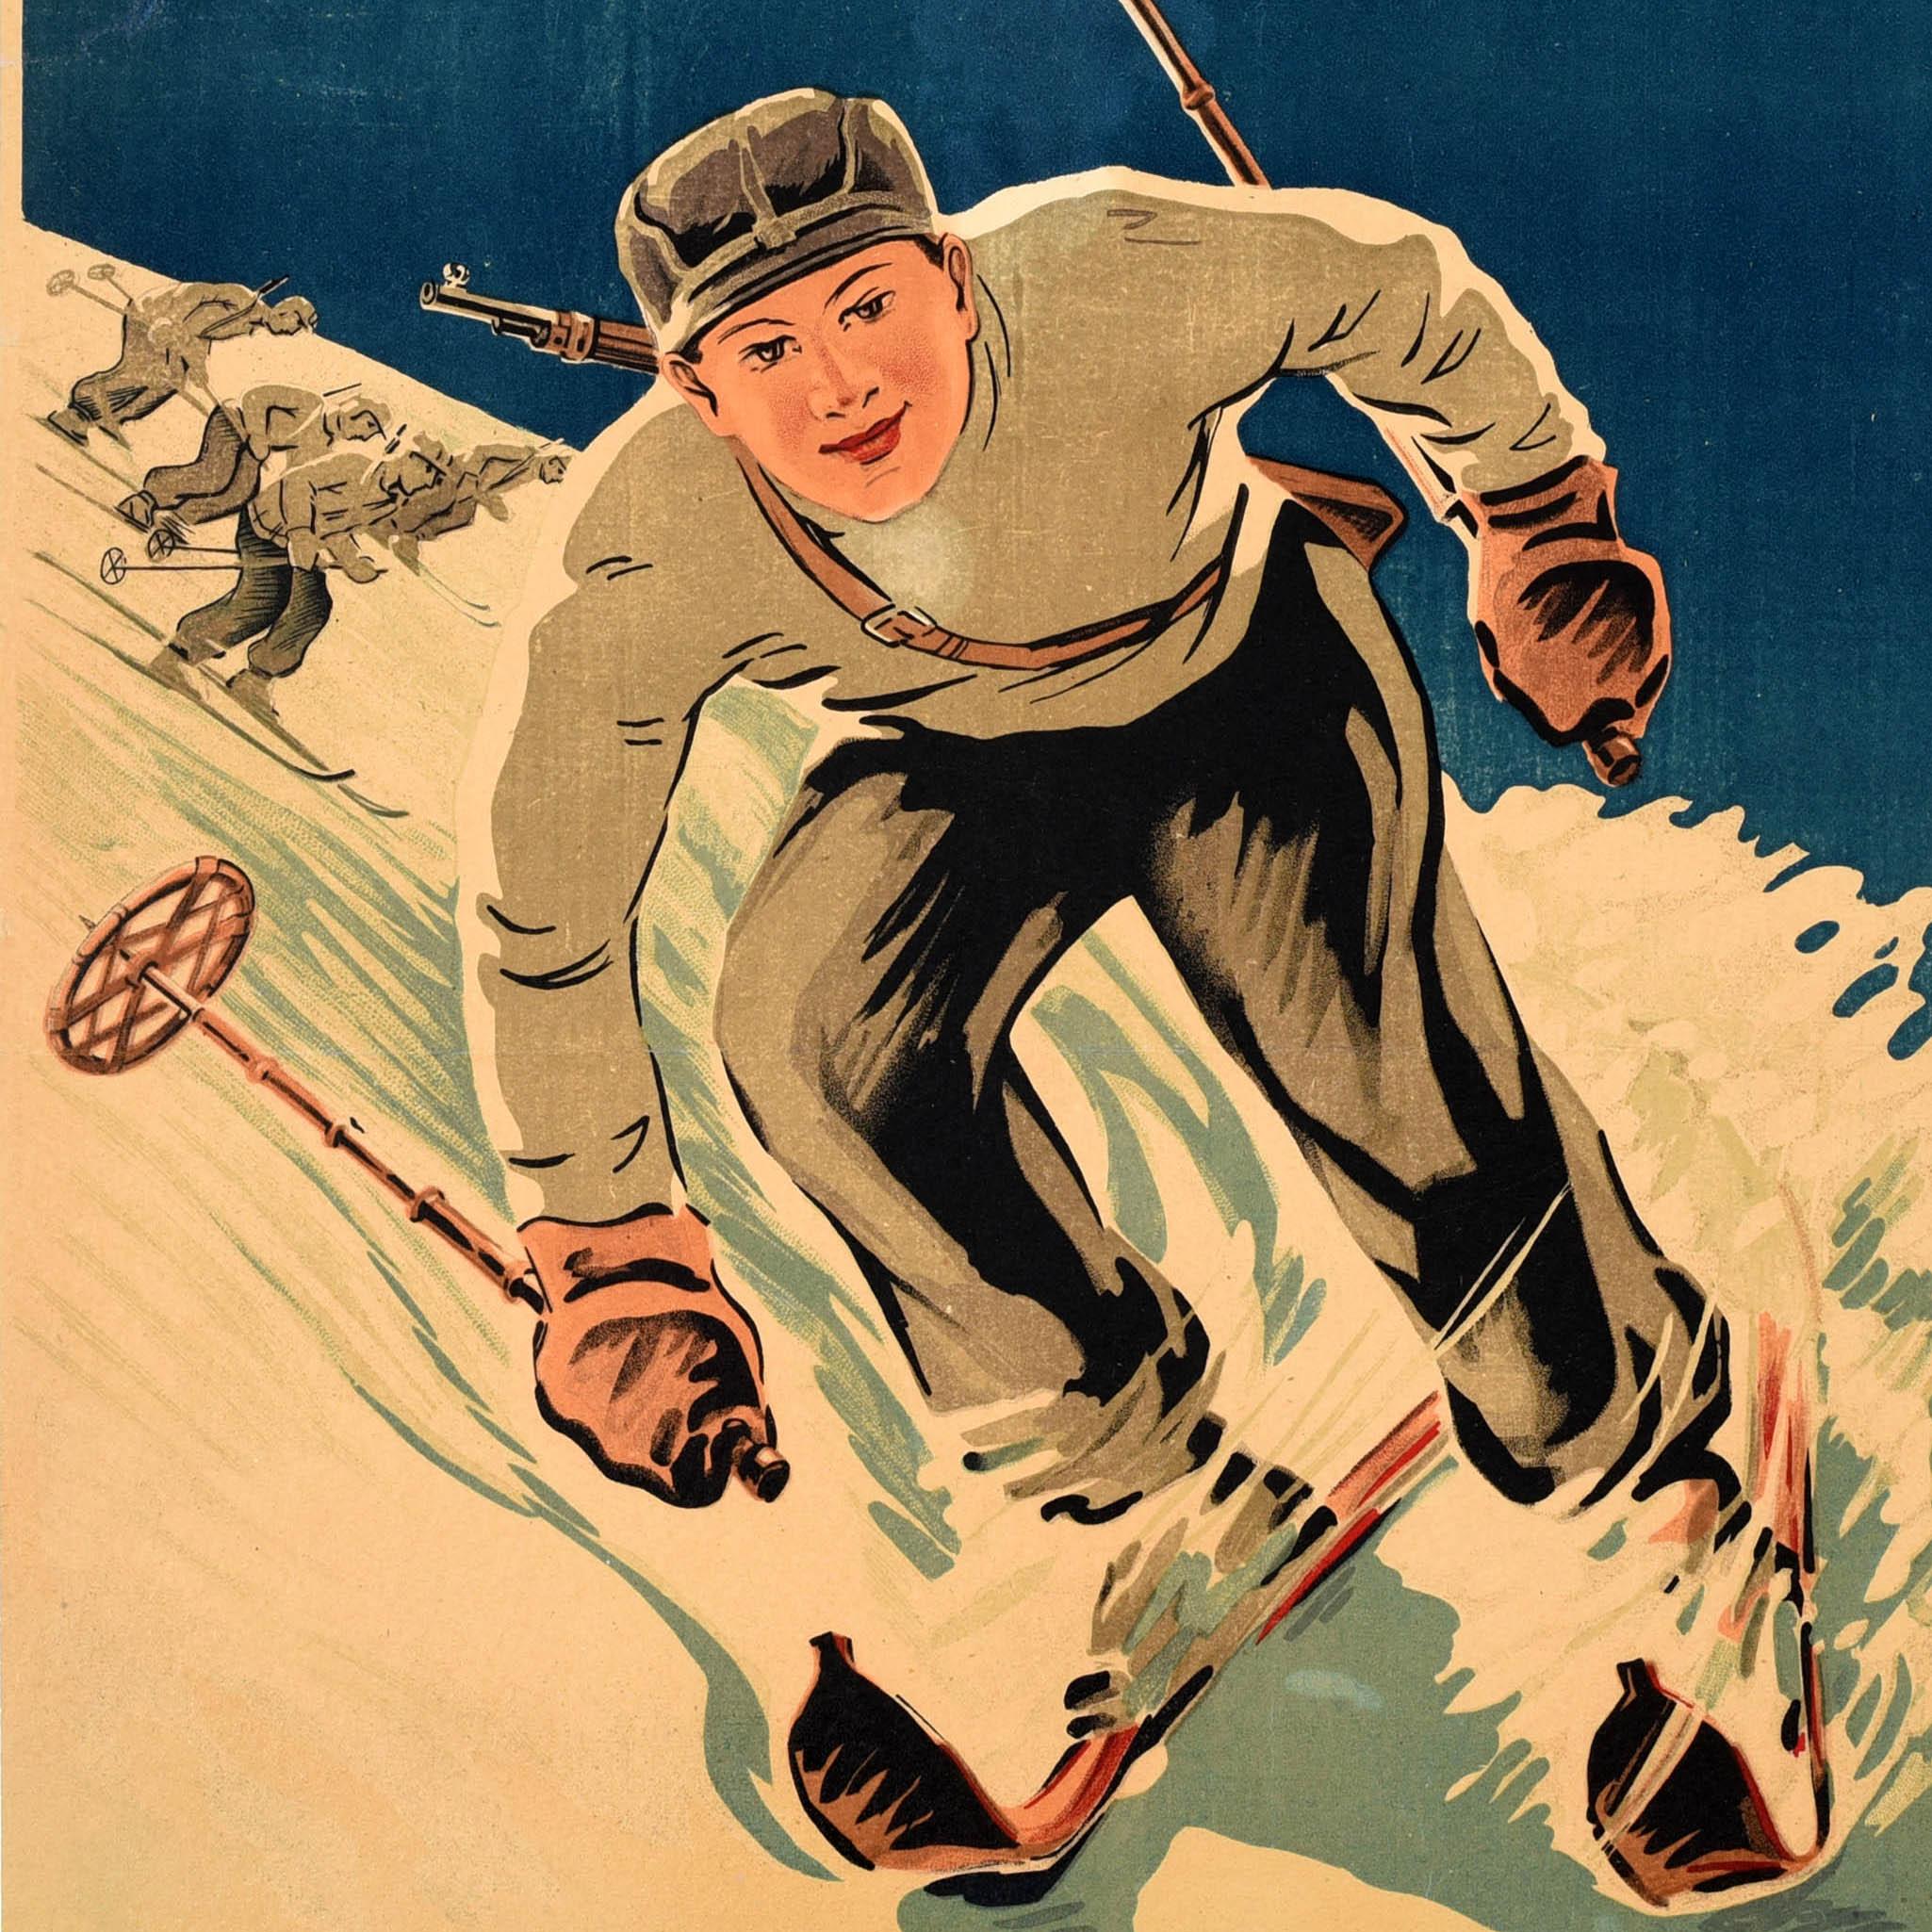 Originales sowjetisches Plakat für die All-Union Freiwillige Sportgesellschaft - Bereiten wir neue Reserven von Skifahrern für die Rote Armee vor! Dynamisches Kunstwerk mit einem Skifahrer, der mit hoher Geschwindigkeit auf den Betrachter zufährt,